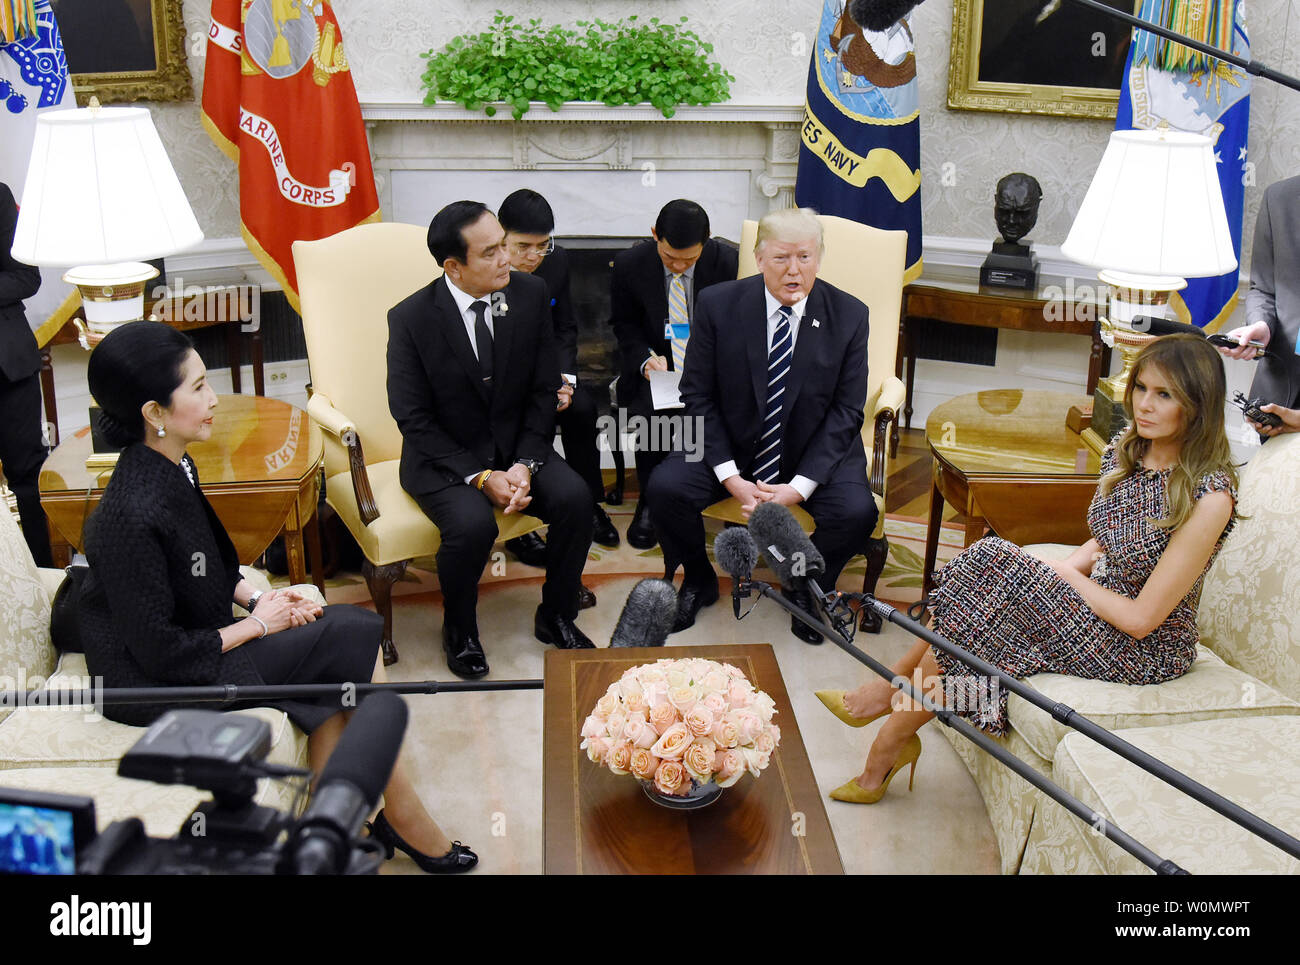 Präsident Donald Trump und First Lady Melania Trump willkommen Premierminister Prayut Chan-o-cha und Frau Chan-o-Cha von Thailand im Oval Office des Weißen Hauses in Washington, DC, 2. Oktober 2017. Foto von Olivier Douliery/UPI Stockfoto